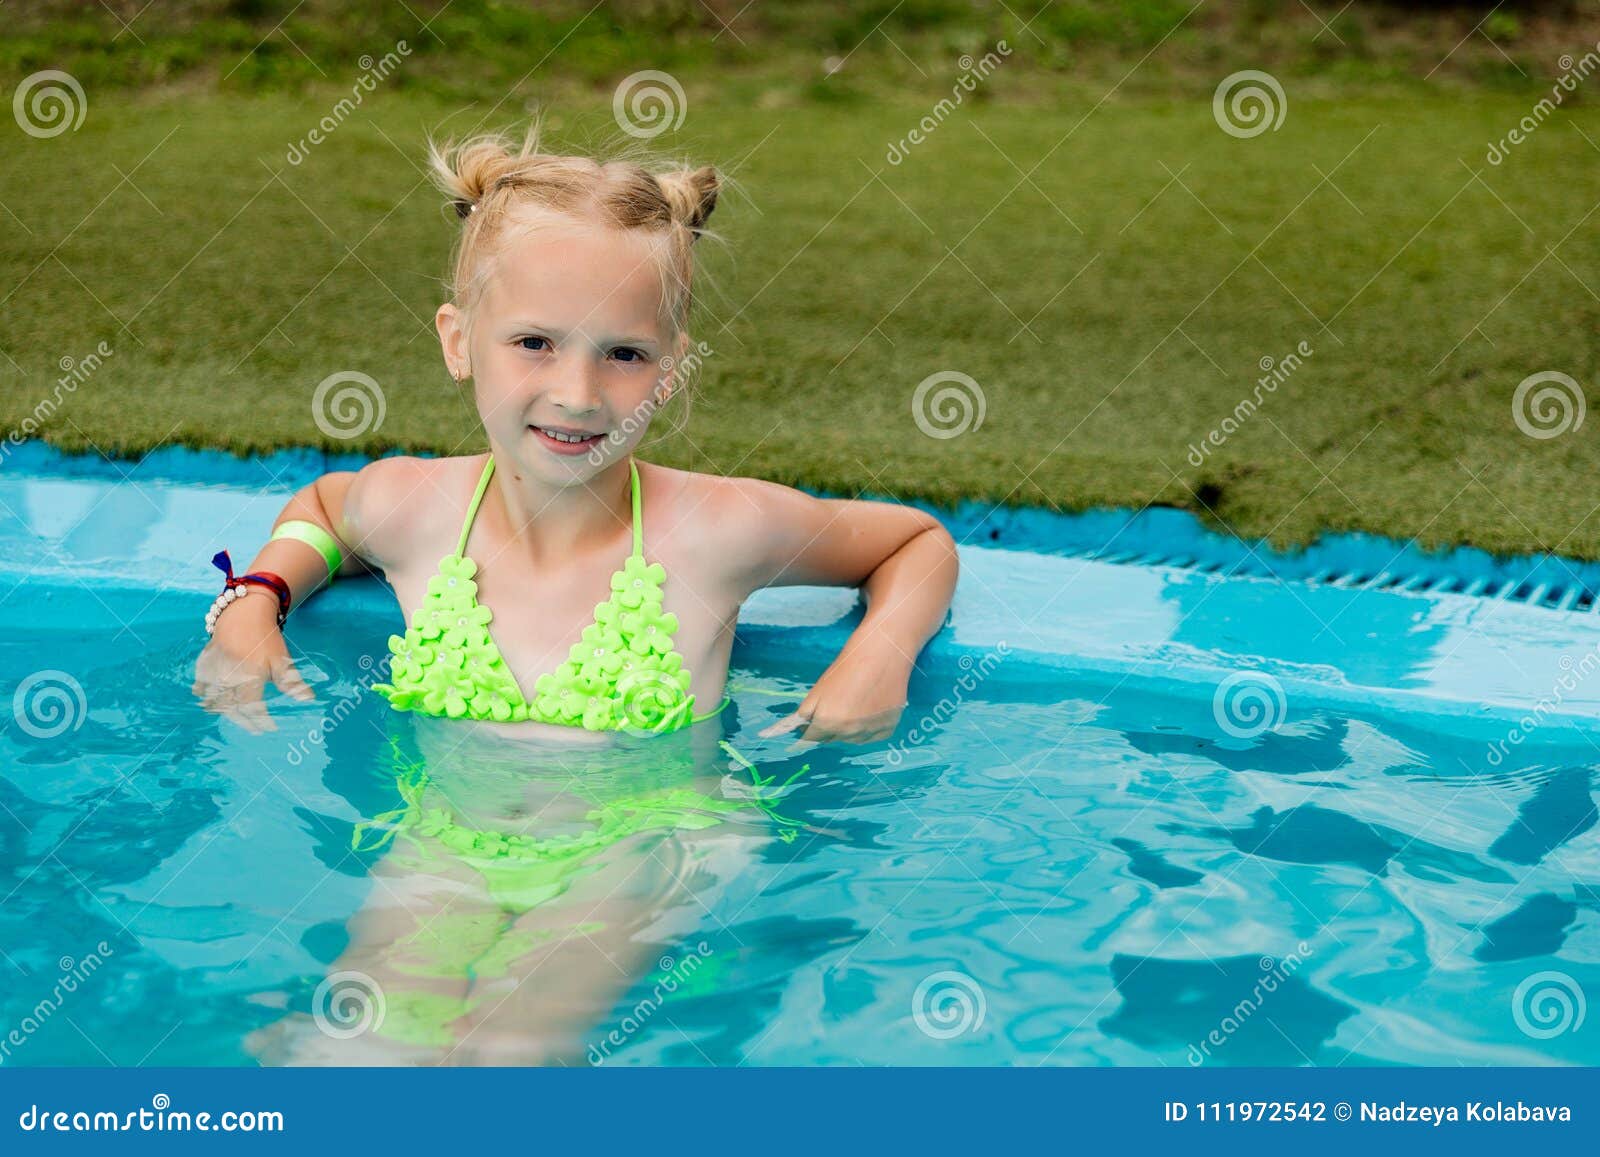 Девочка купается купальник. Девочка в купальнике плавает. Девушки купаются в бассейне в купальнике. Девочка купальник бассейн. Пухлые дети в купальниках в бассейне.